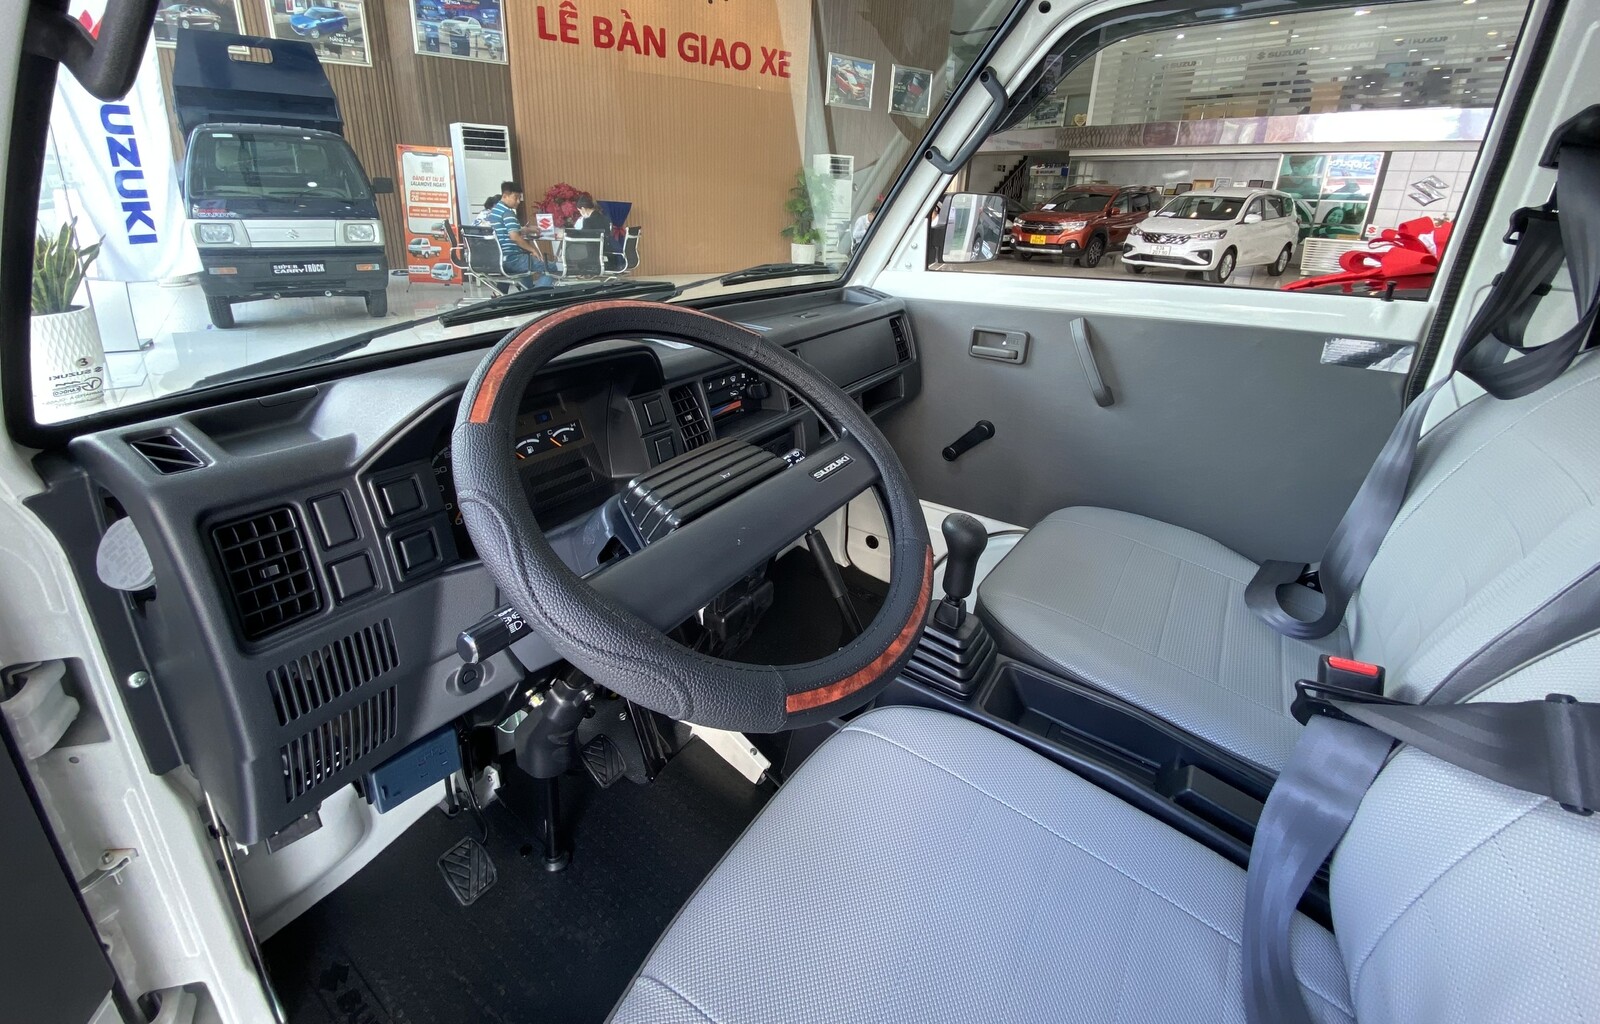 Suzuki Blind Van 2023 - Chạy được giờ cấm